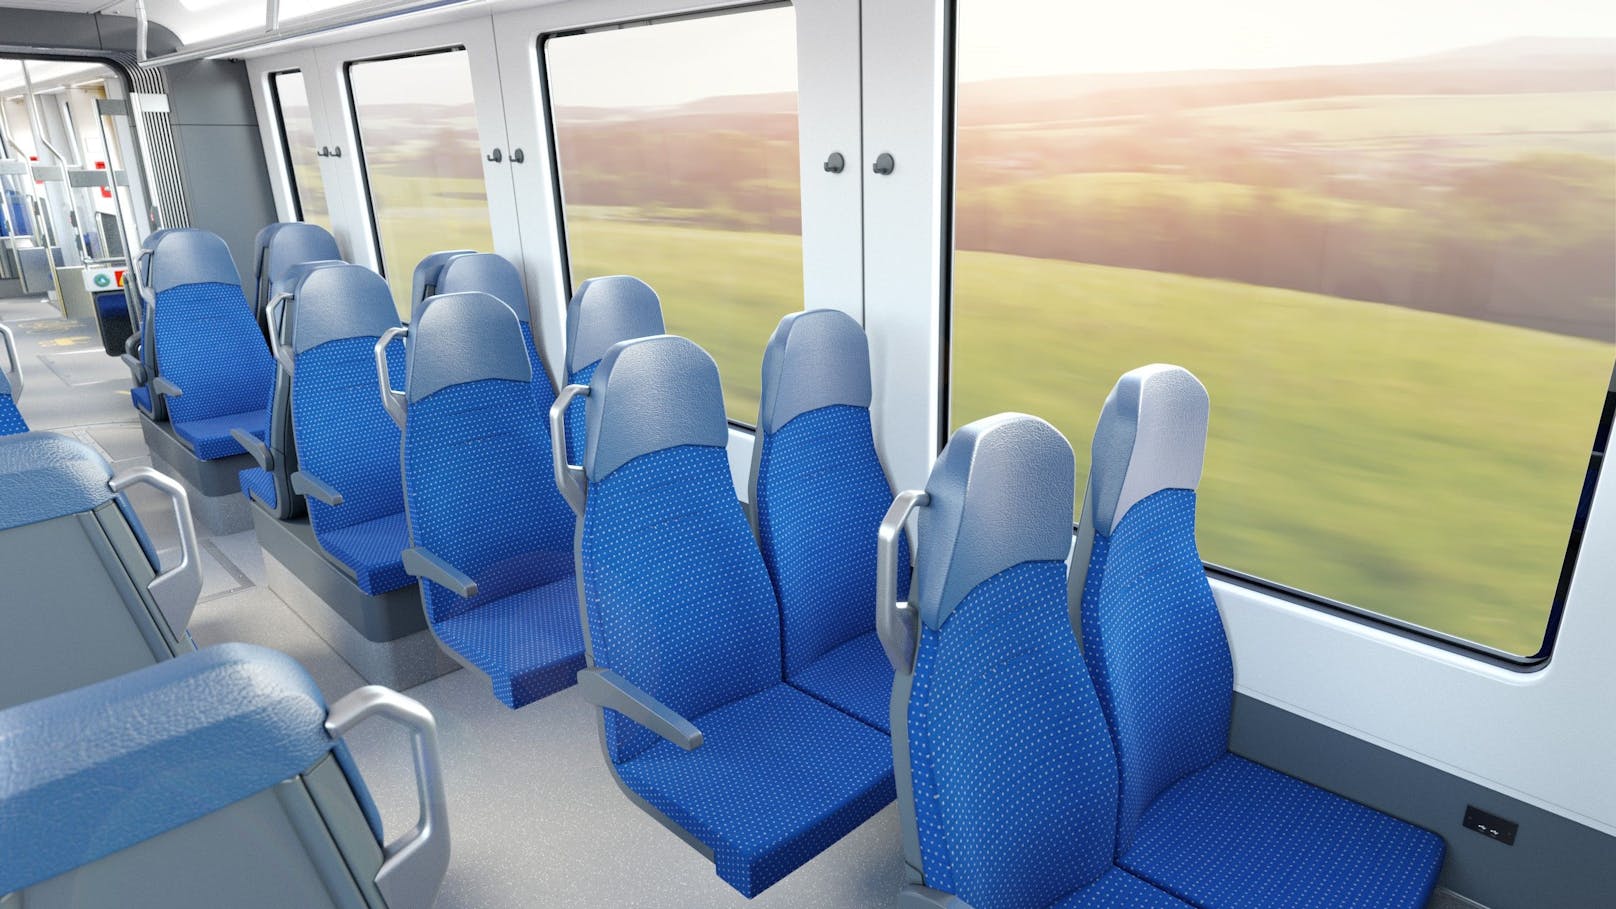 Helle Einrichtung, die Farbe blau dominiert, große Fenster: Auf den ersten Blick wirkt die Innenausstattung der neuen Stadtbahn schlicht, kühl und modern.